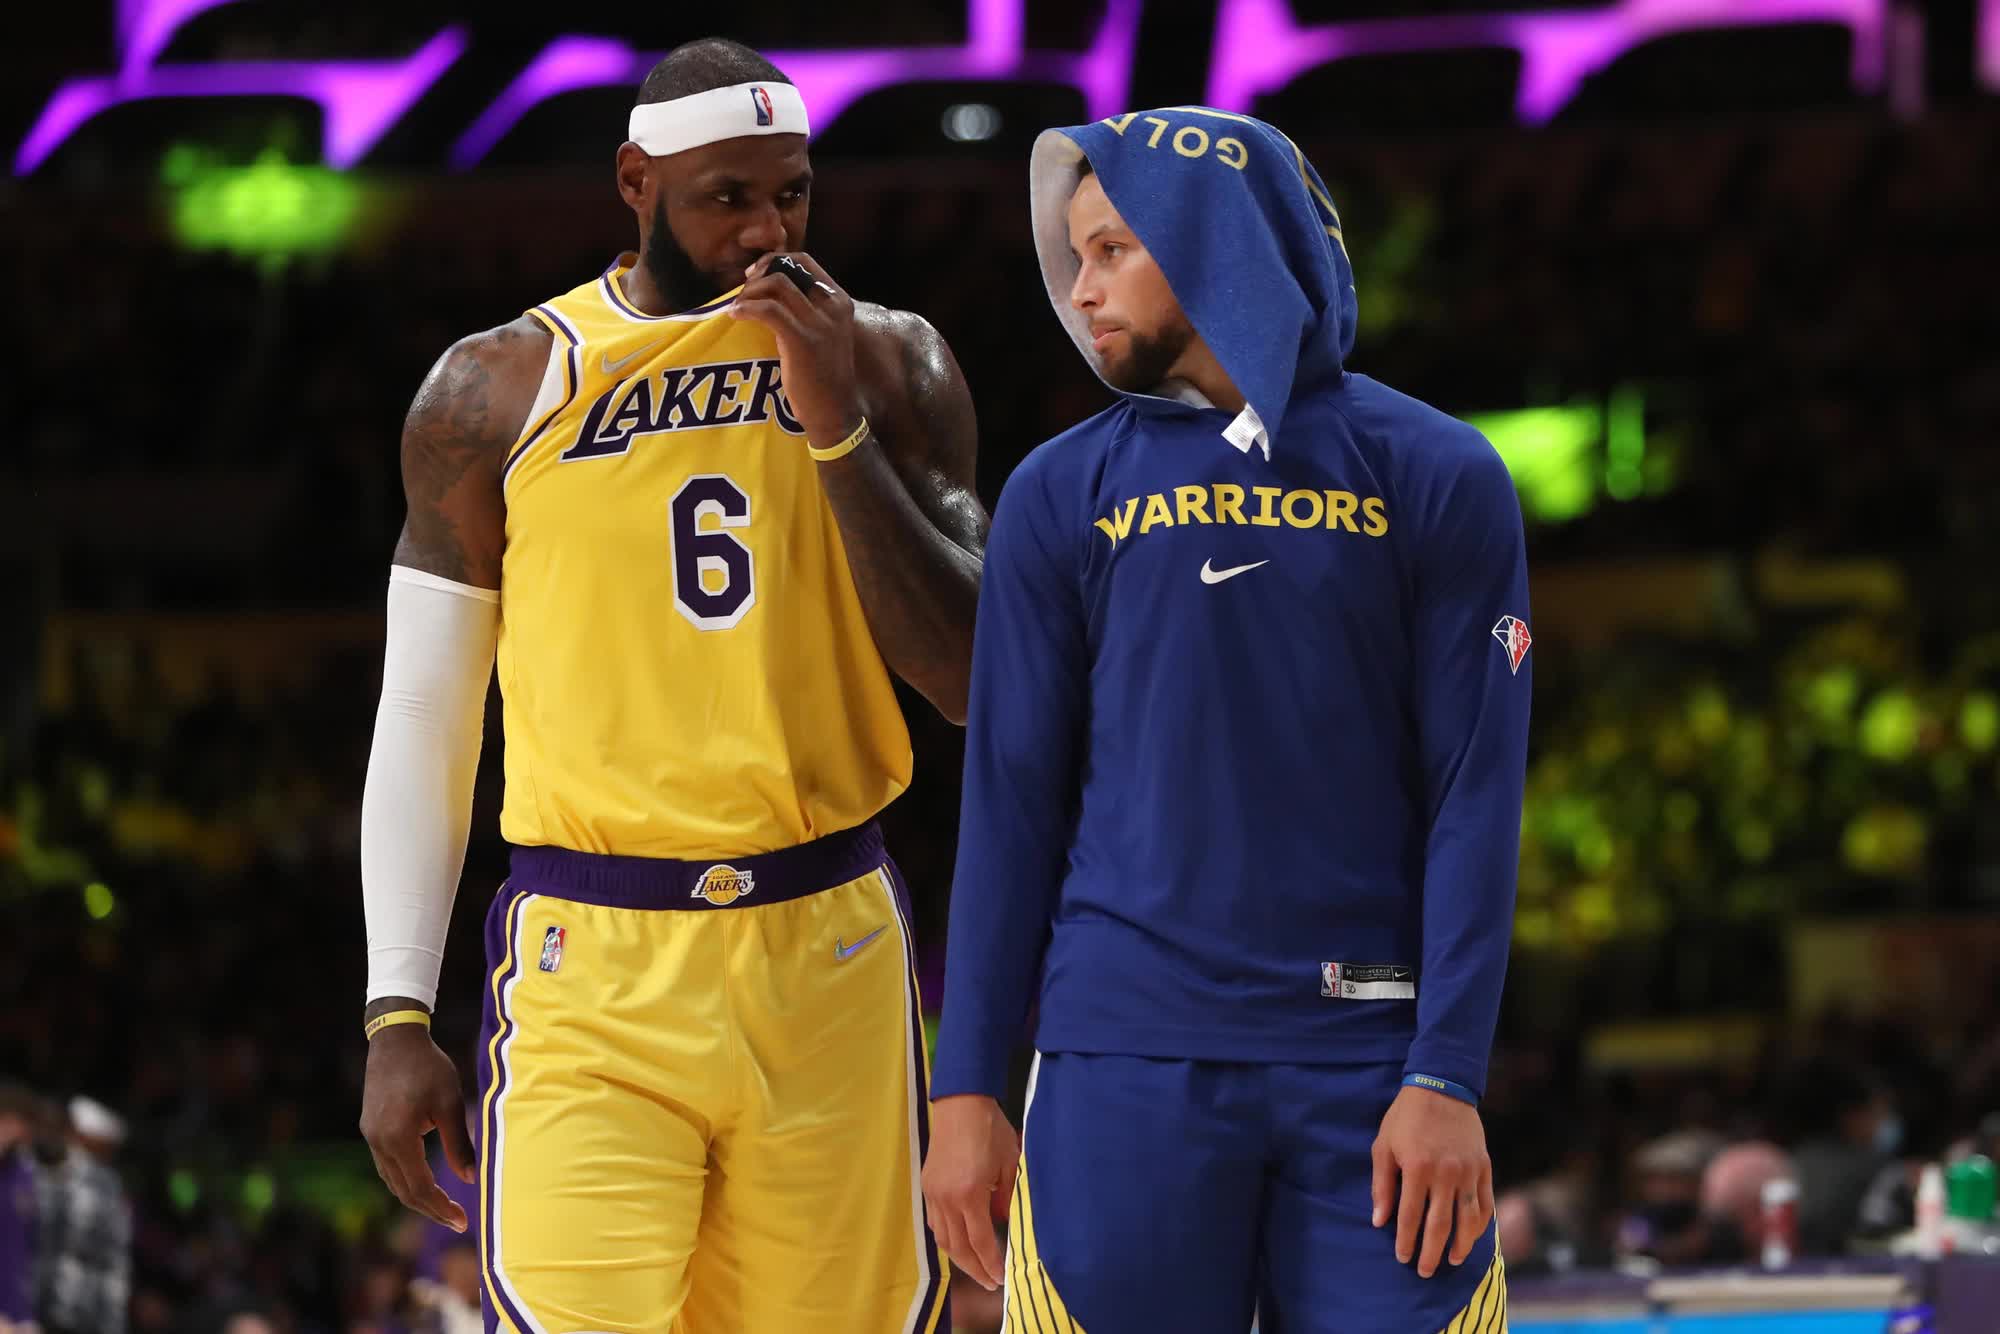 Tương lai bất định của LeBron James với Los Angeles Lakers xung quanh loạt tin đồn chuyển nhượng - Ảnh 2.